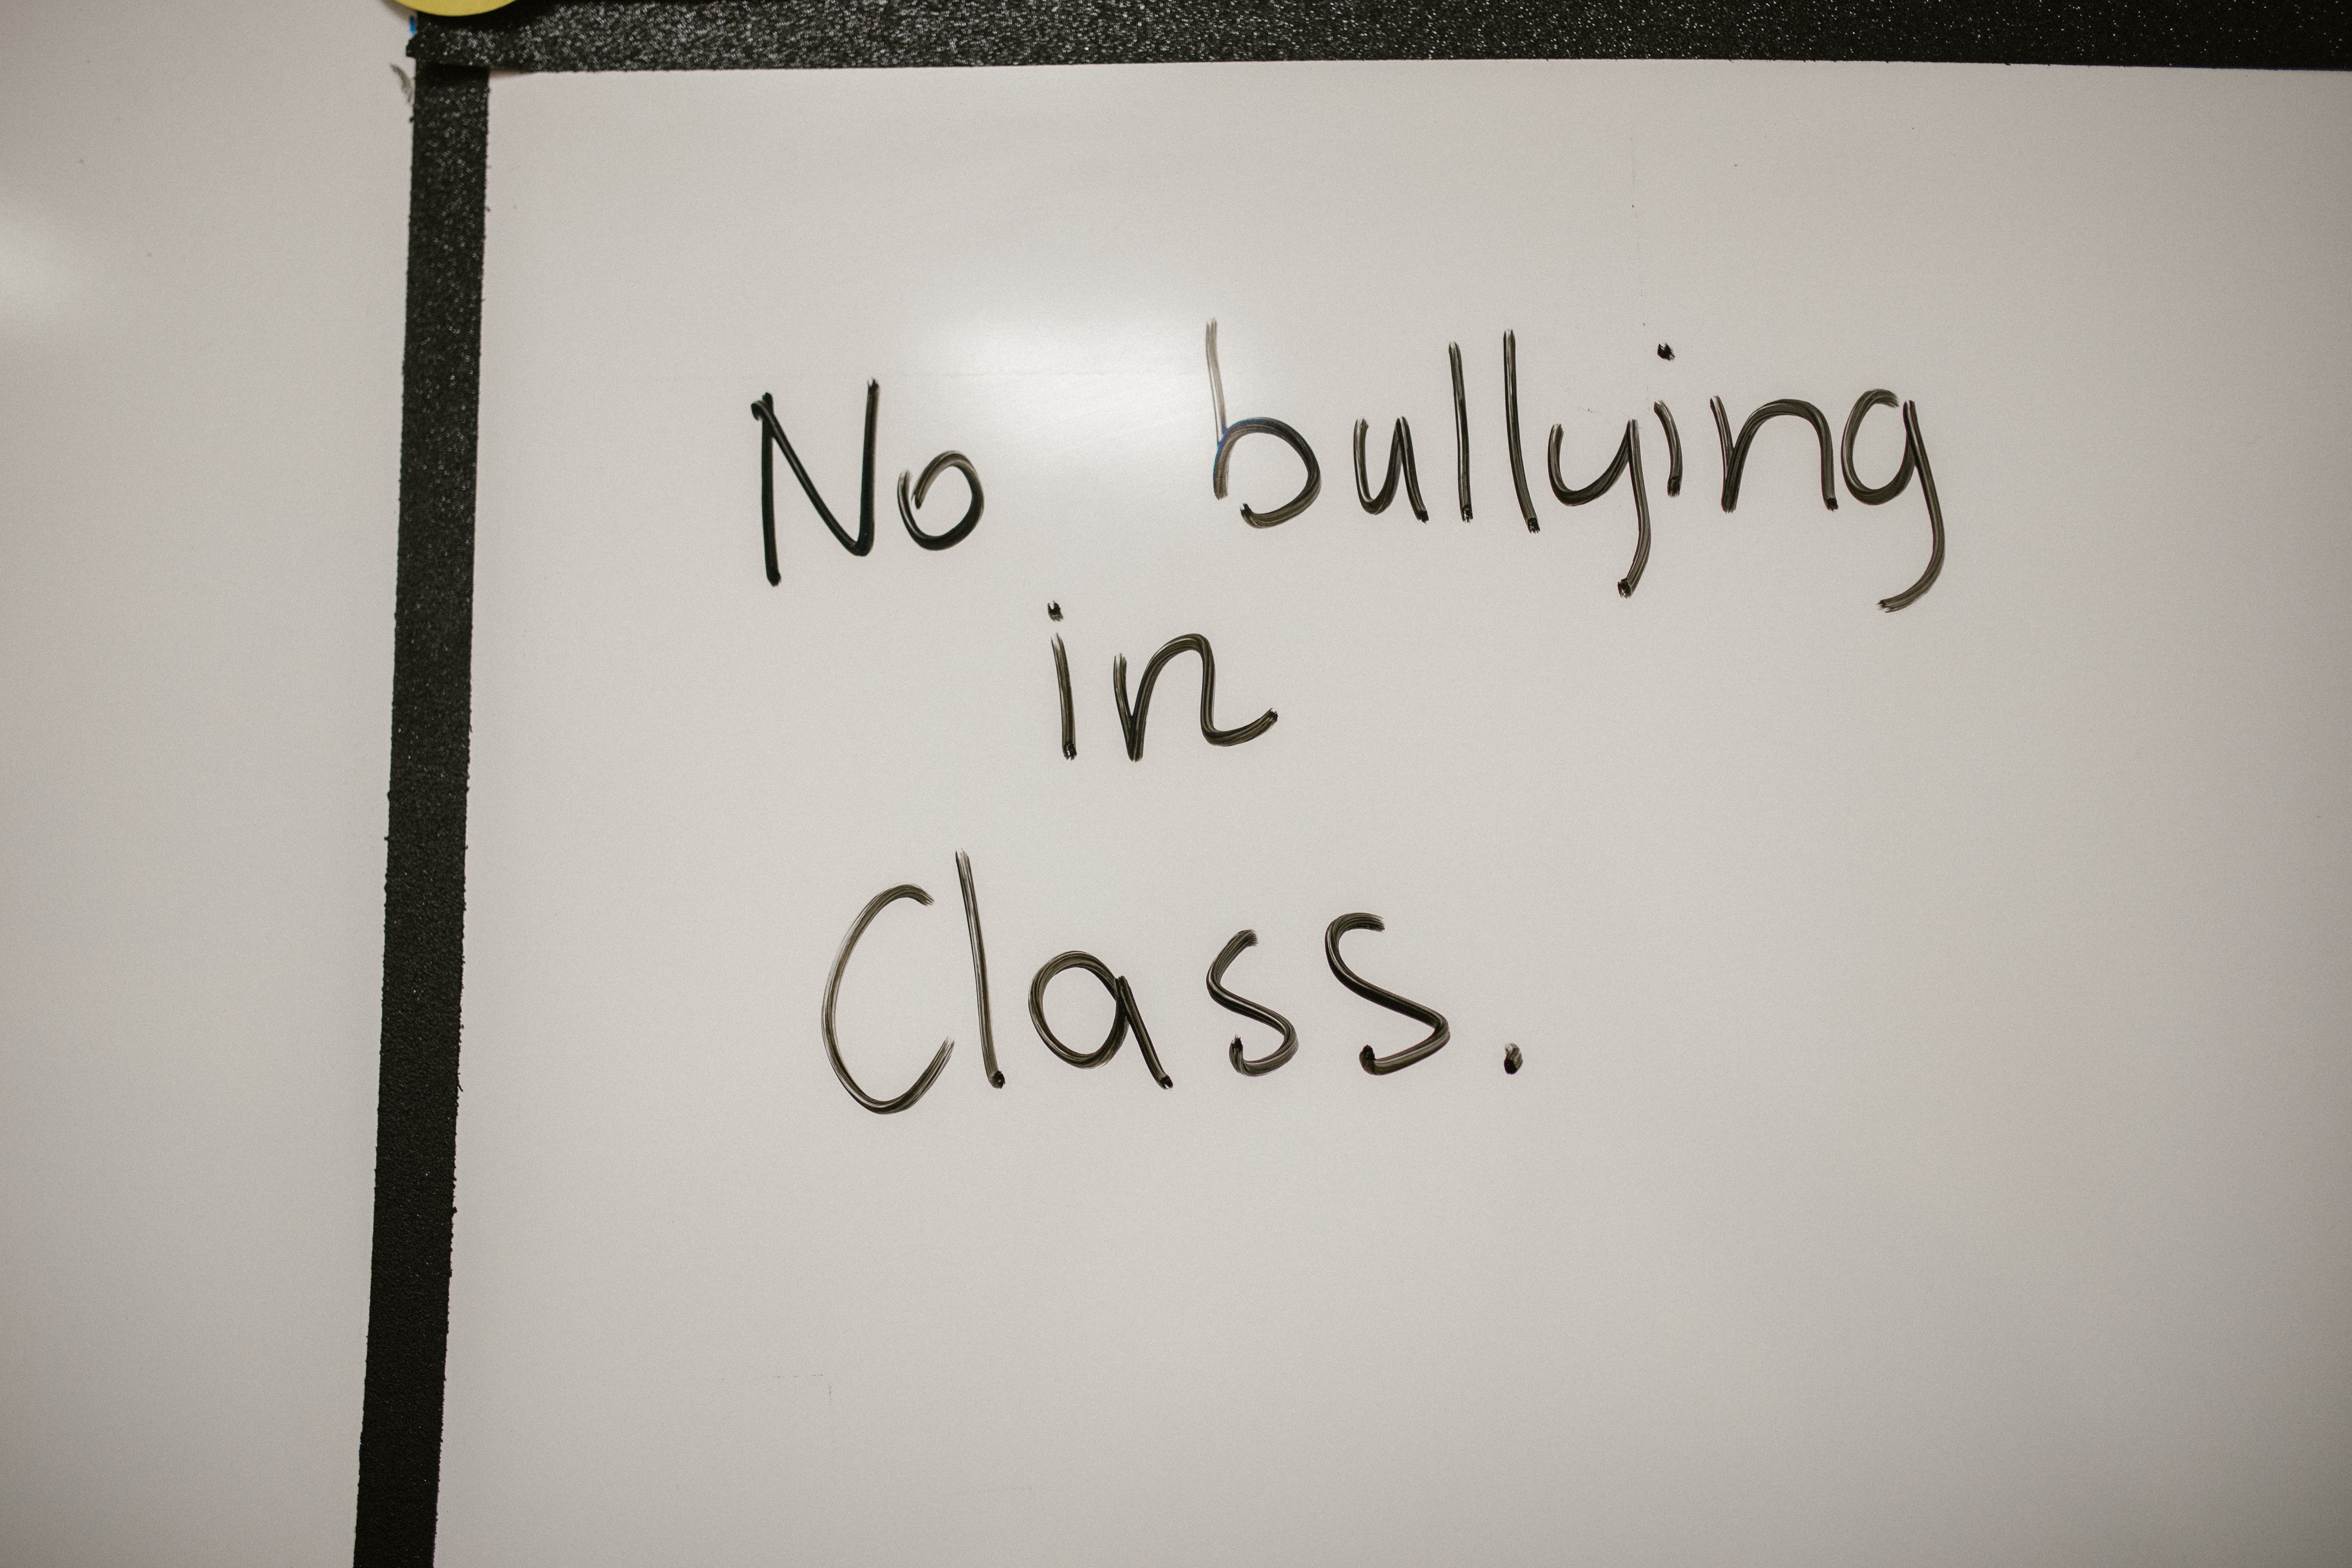 Las desgarradora carta de una niña de 9 años que sufre acoso escolar: "Soy tonta y estúpida".